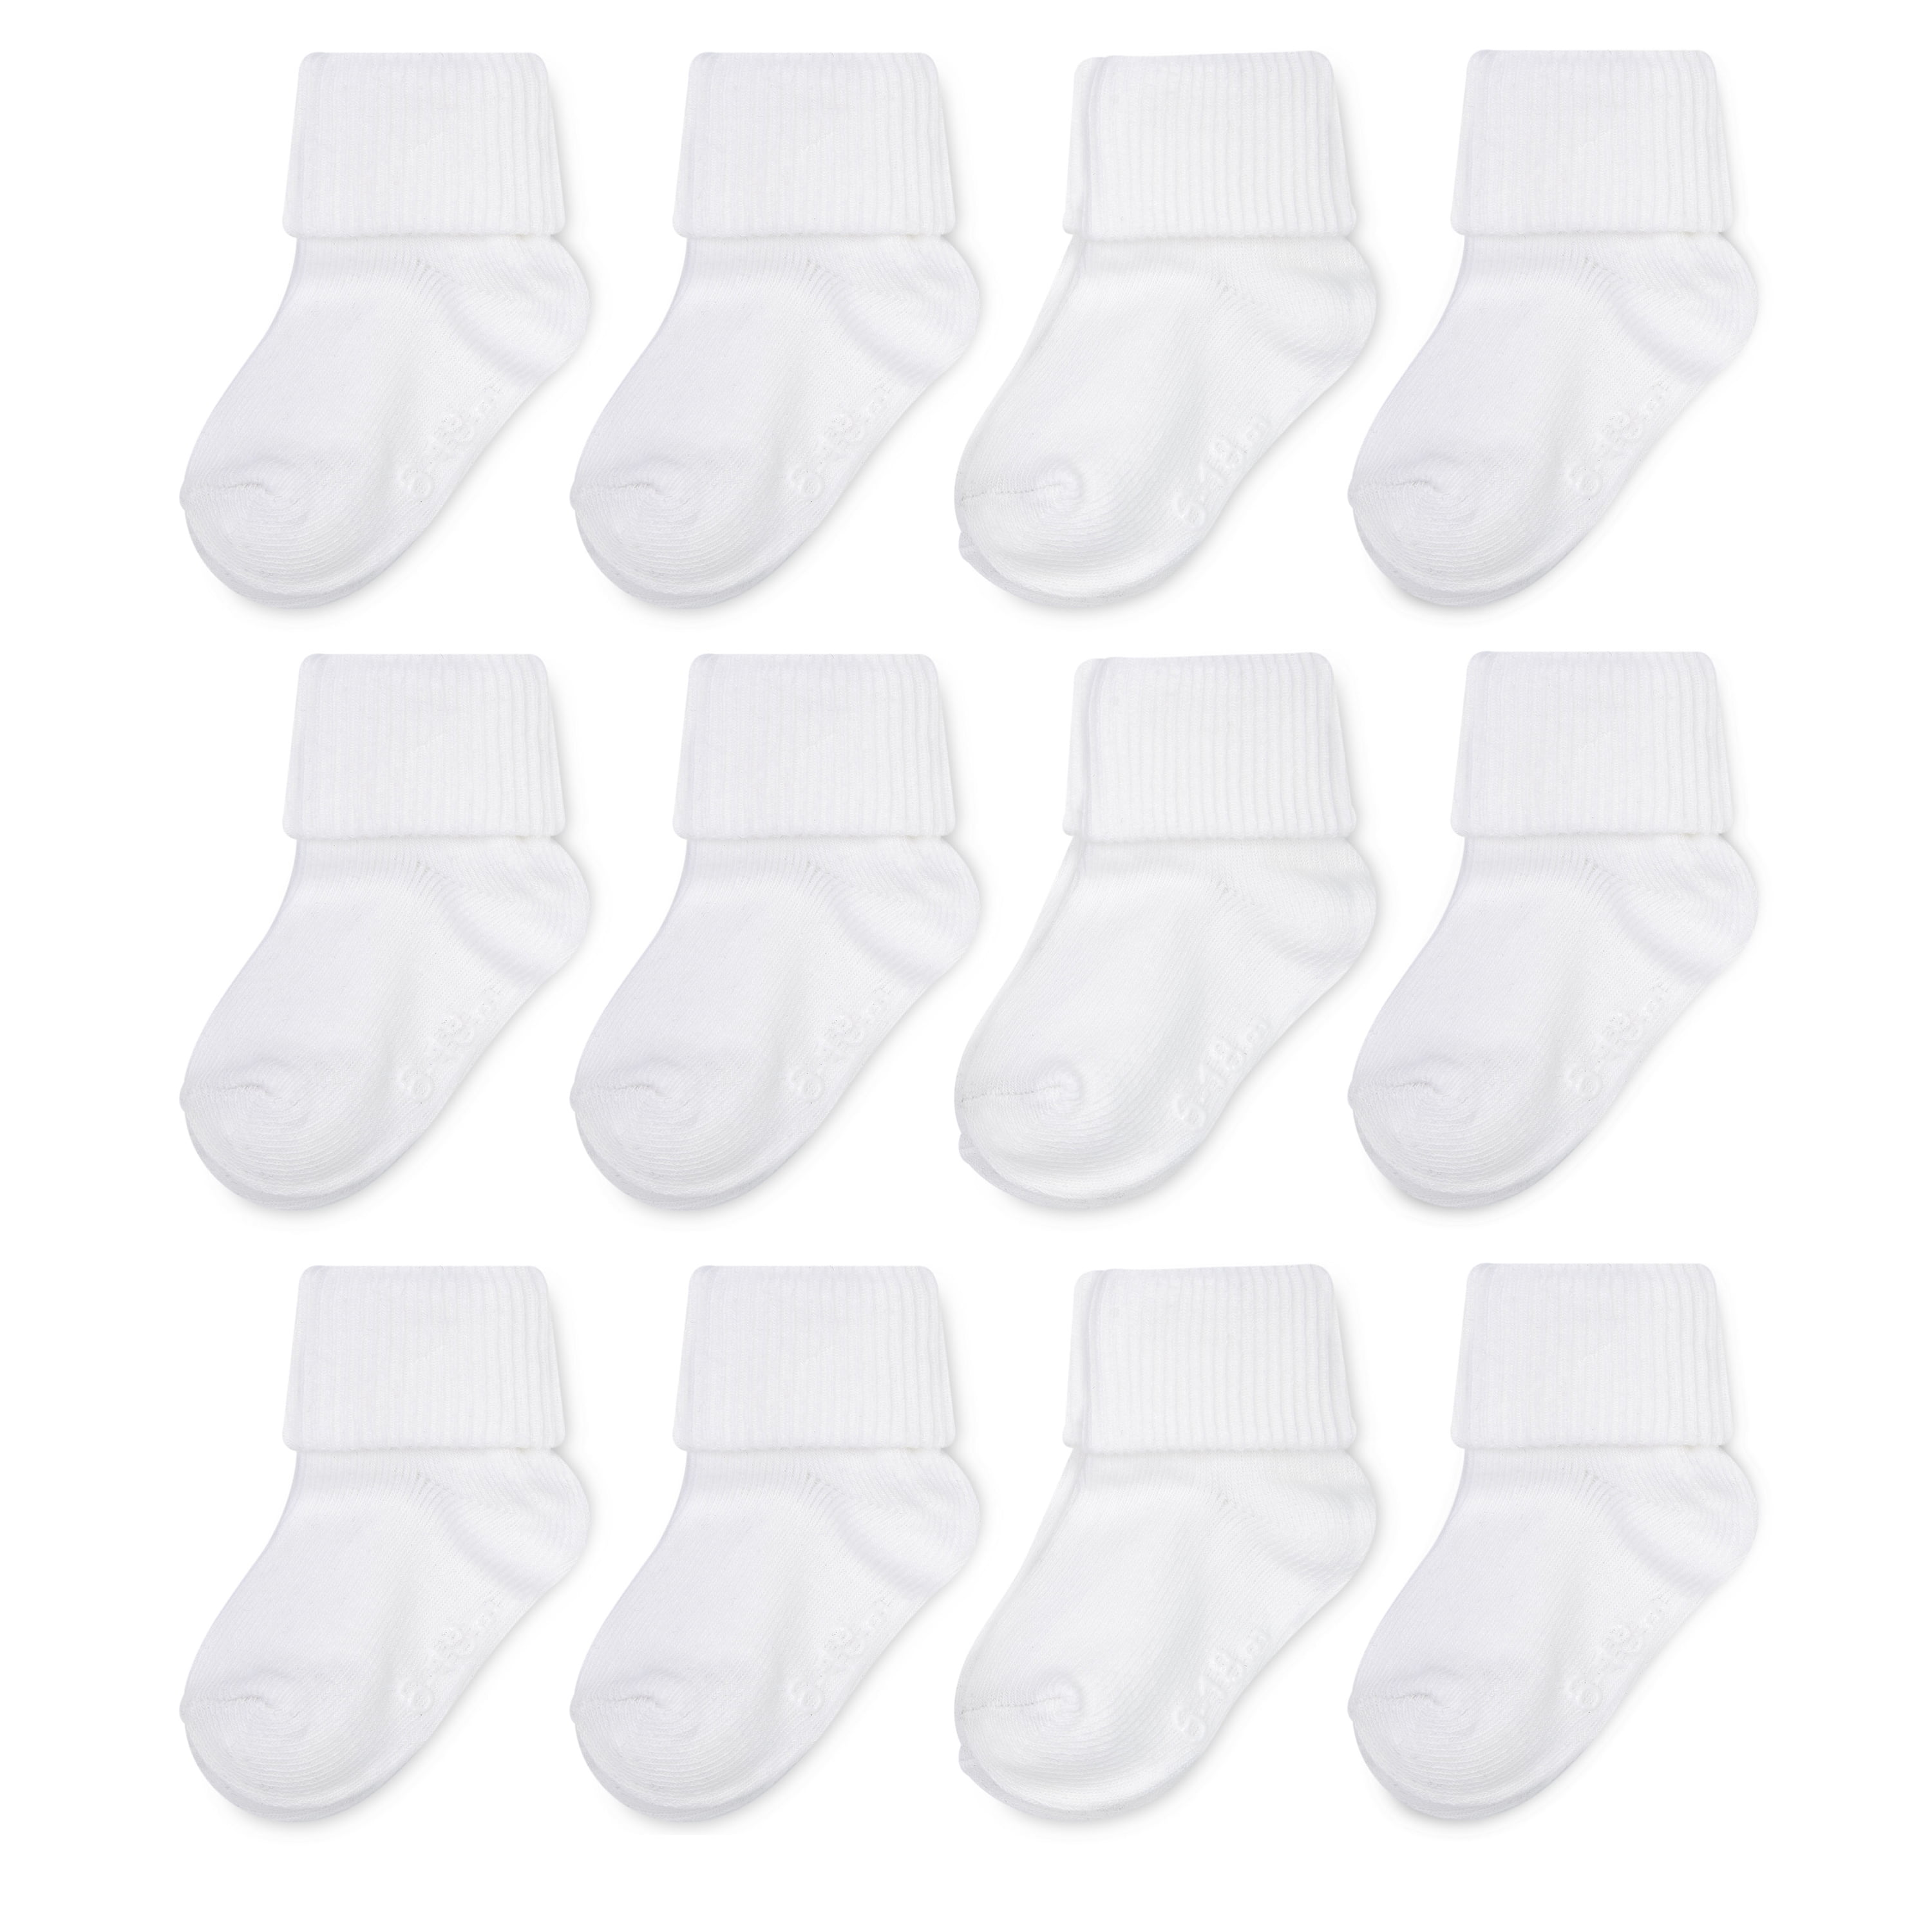 white socks baby boy